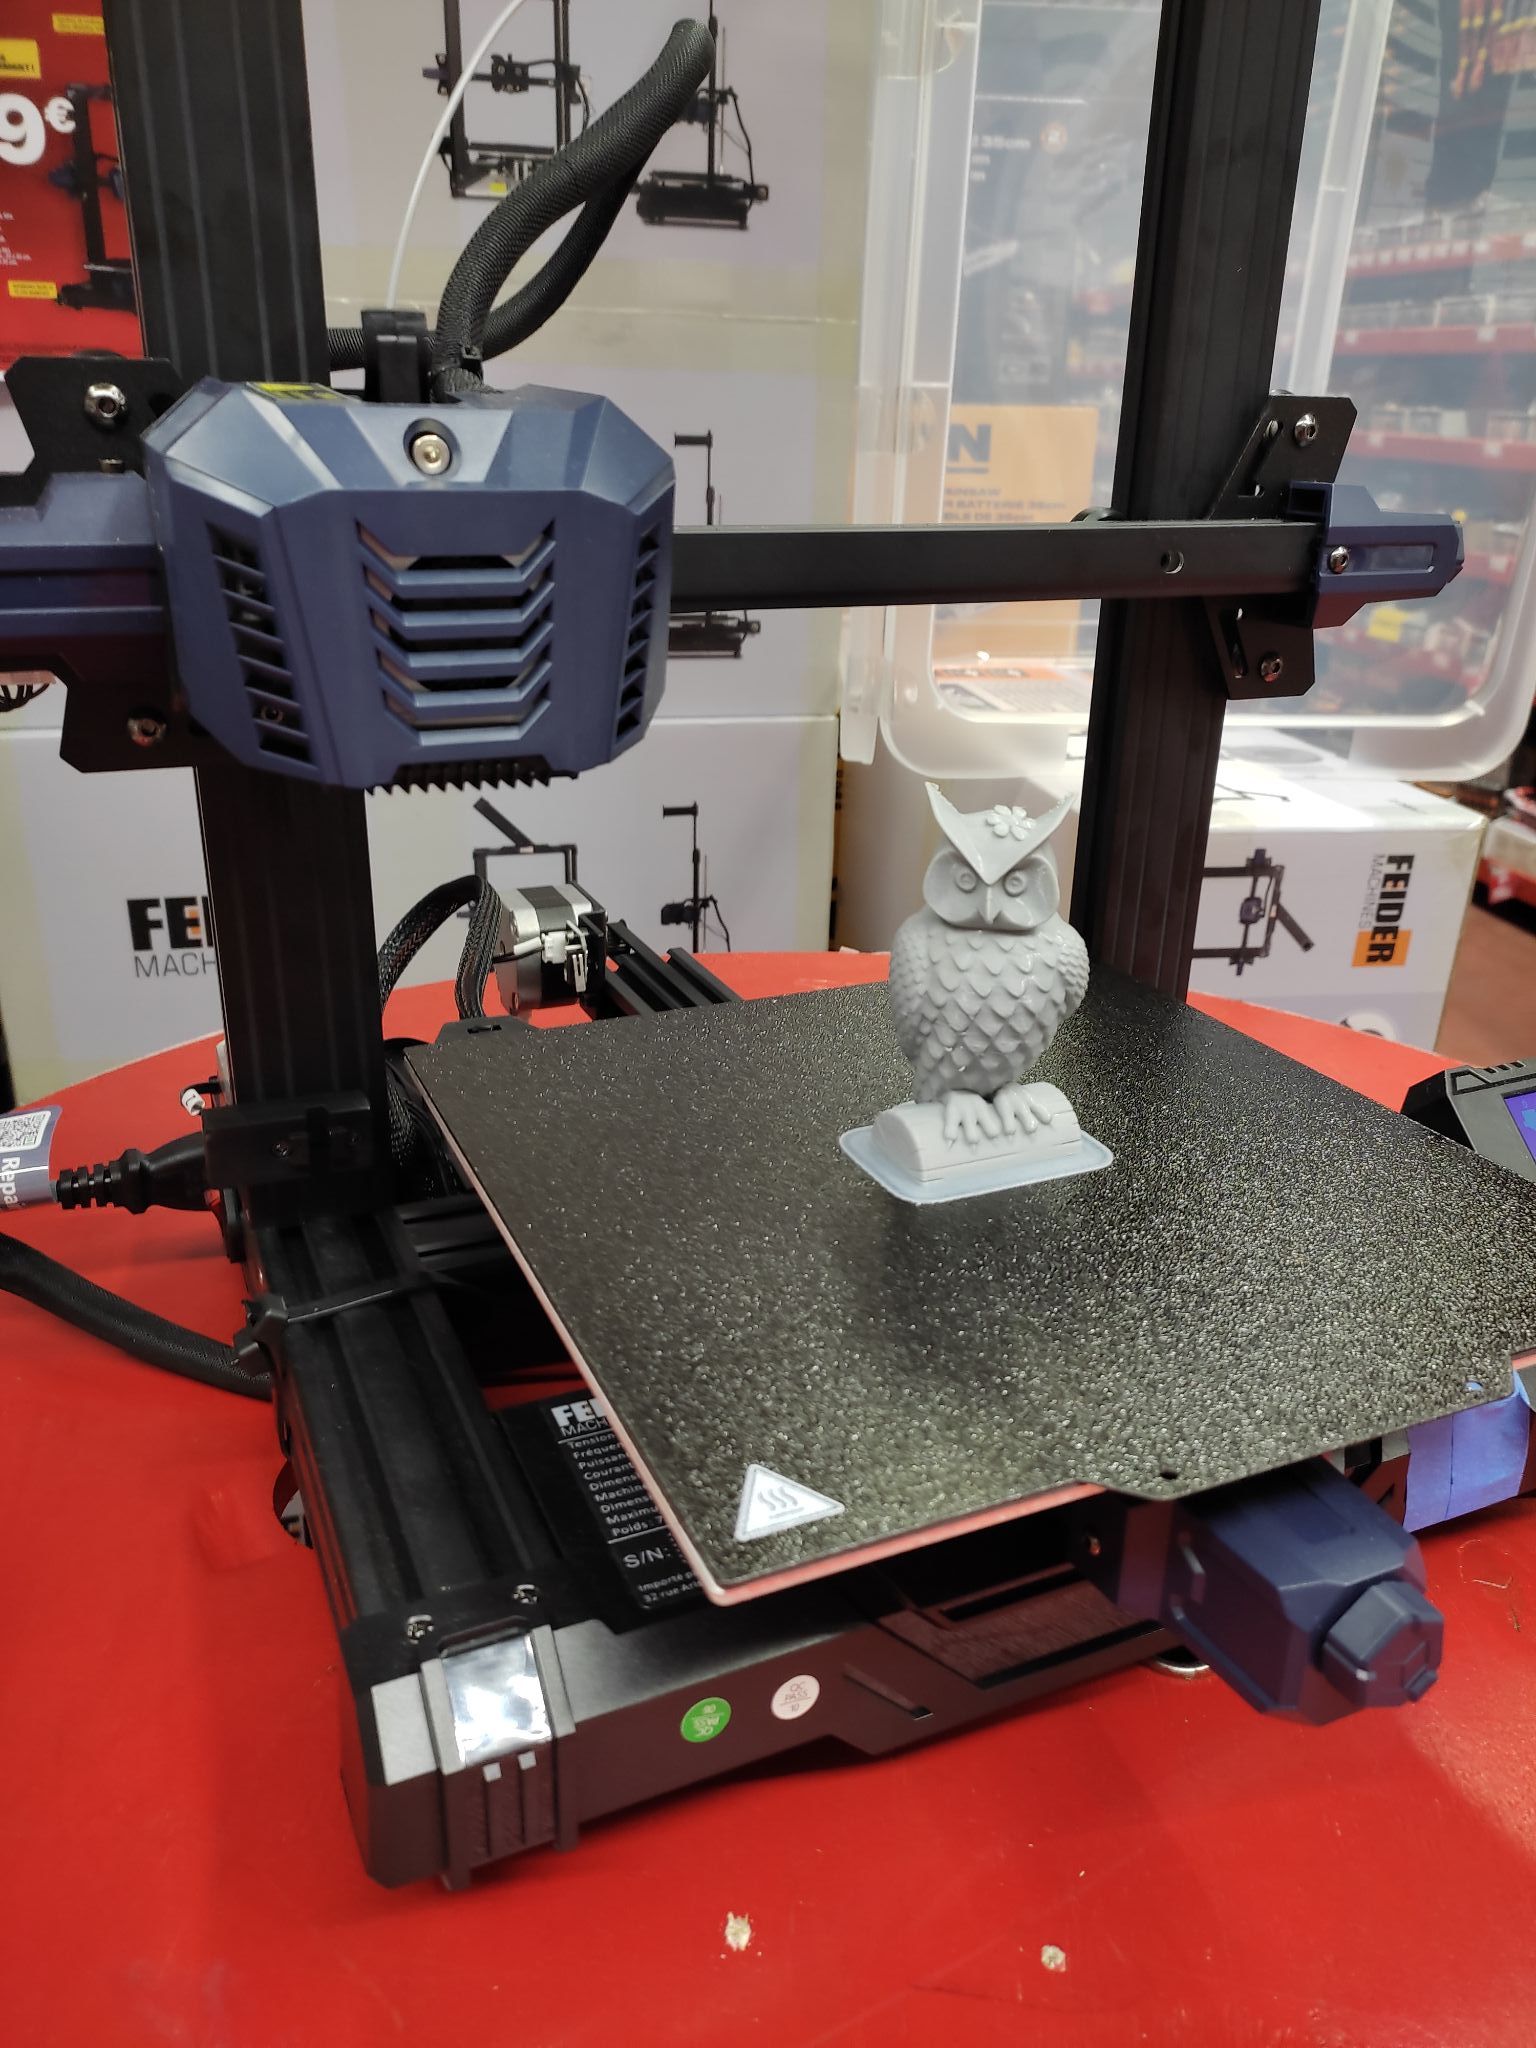 Feider (imprimante 3D) : fiche technique, tutoriel, test et prix